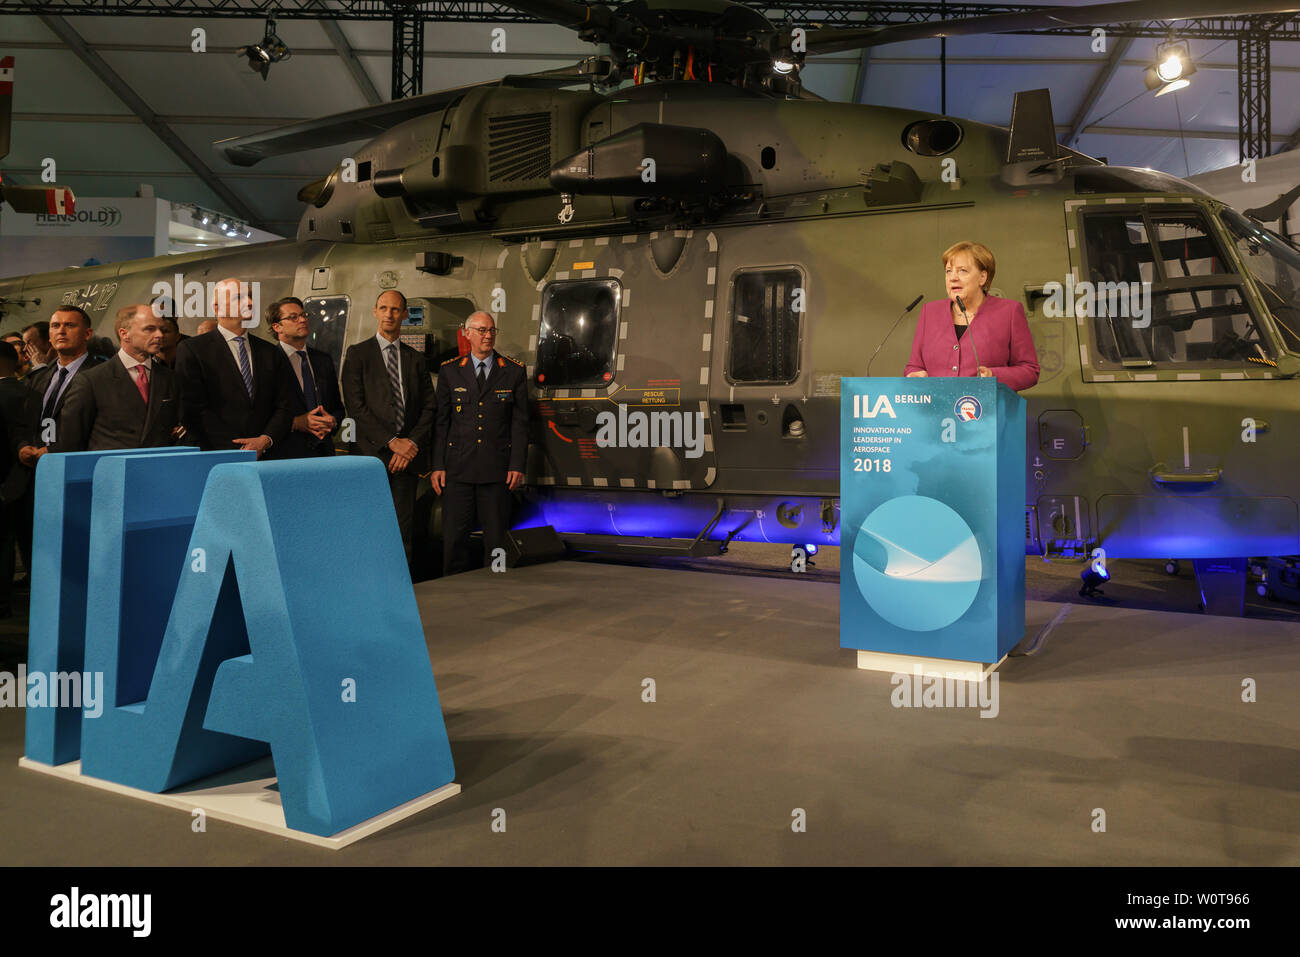 ILA 2018-Eröffnungsrundgang mit Bundeskanzlerin Merkel - Dr. Angela Merkel, Bundeskanzlerin am Rednerpult Stock Photo